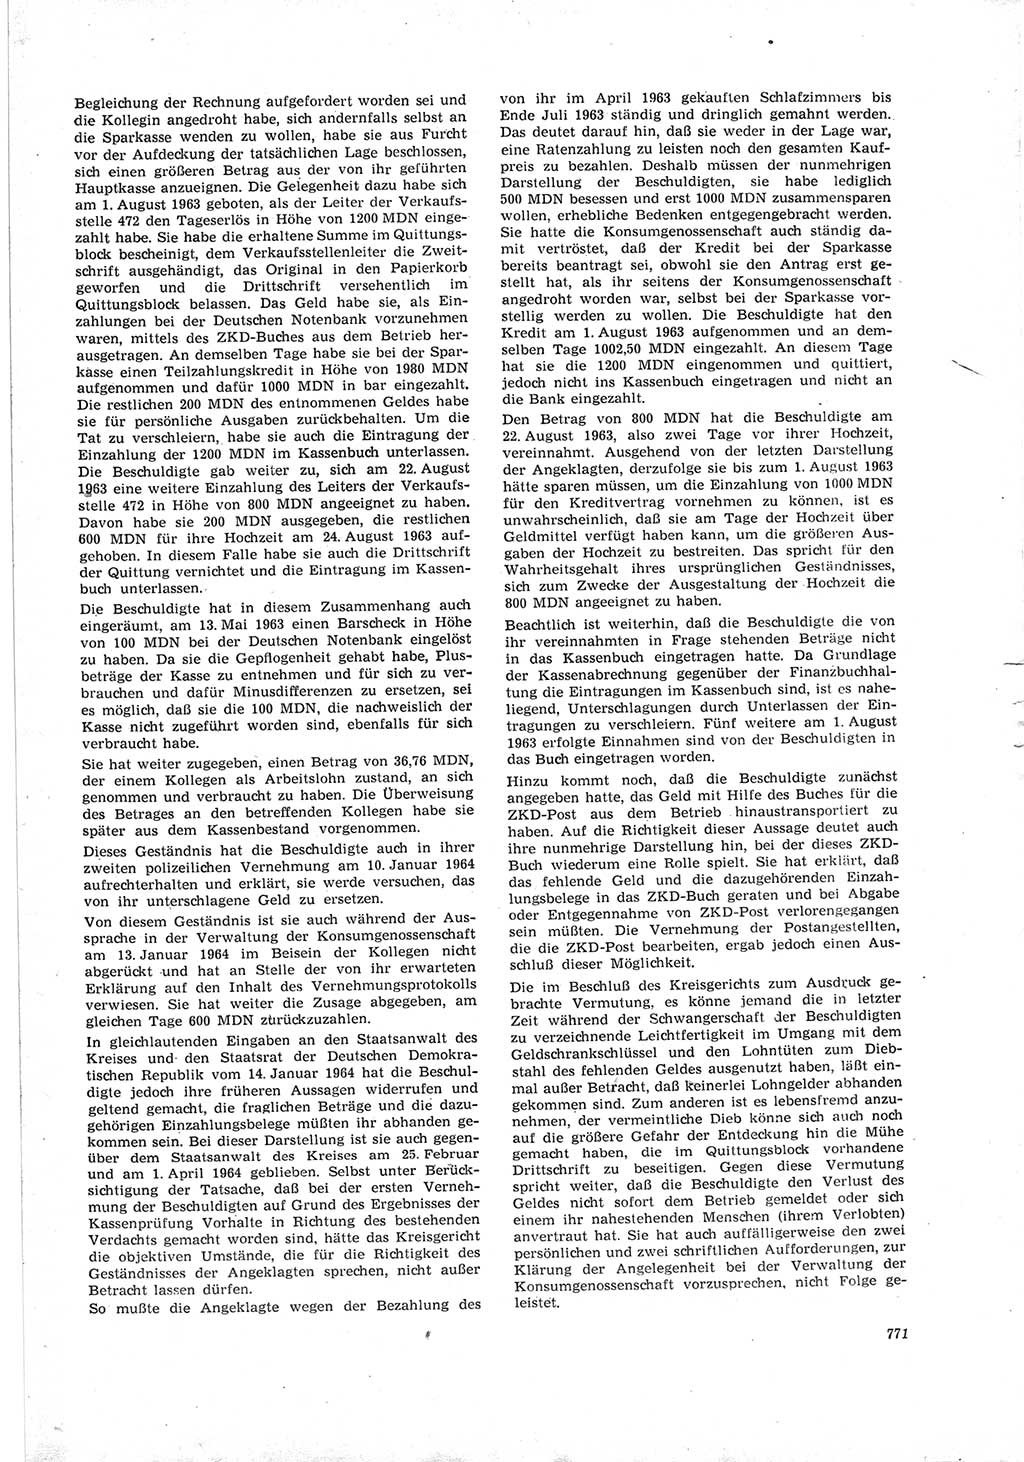 Neue Justiz (NJ), Zeitschrift für Recht und Rechtswissenschaft [Deutsche Demokratische Republik (DDR)], 19. Jahrgang 1965, Seite 771 (NJ DDR 1965, S. 771)